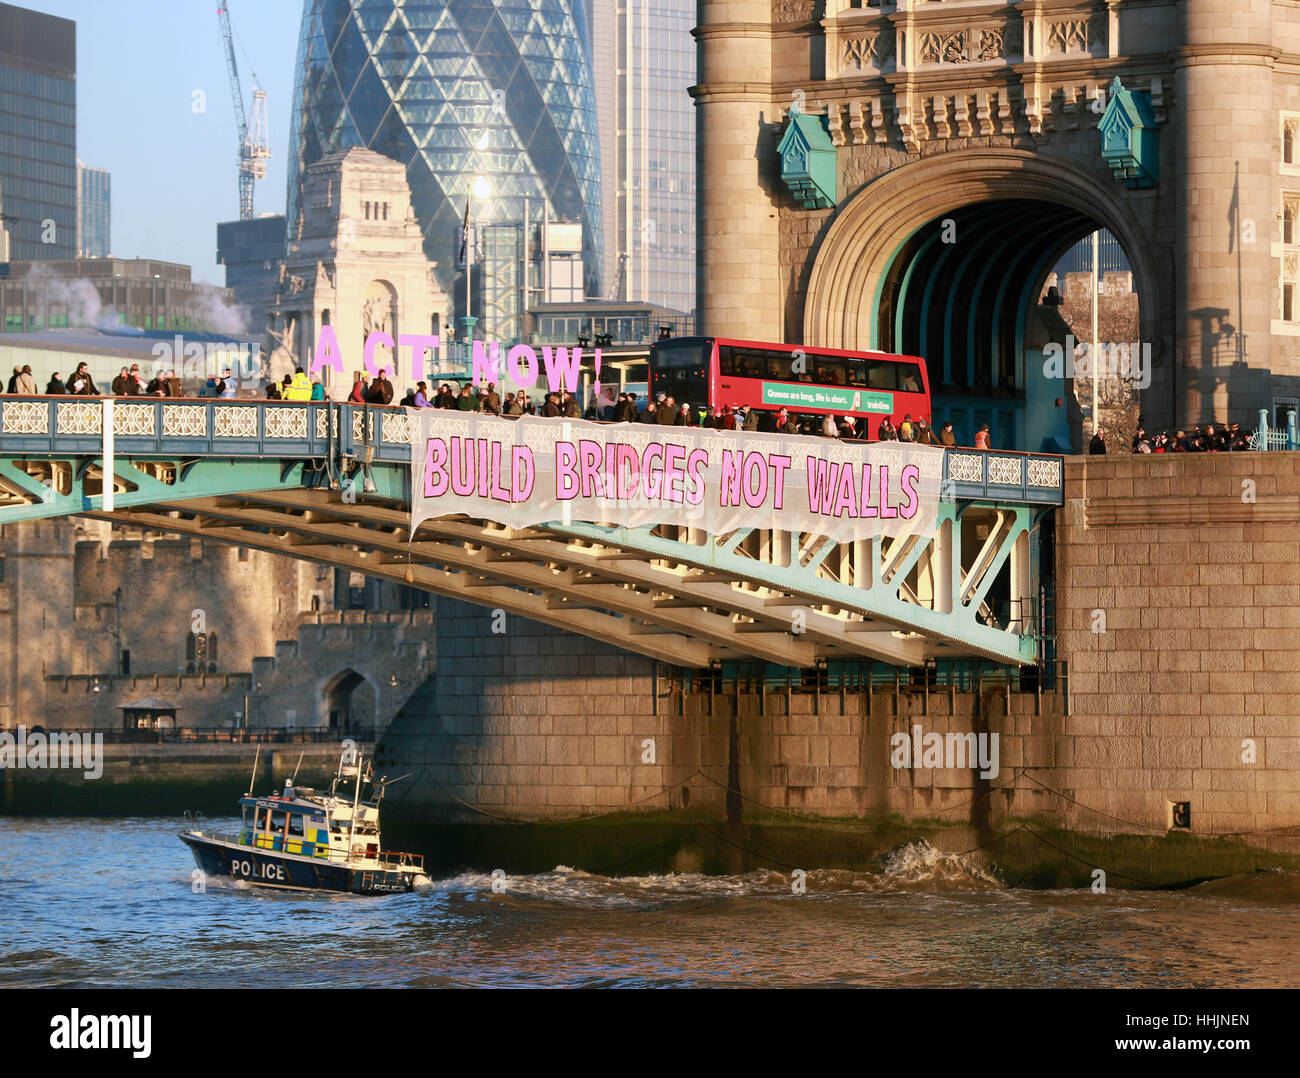 EDITORIAL n'utilisent qu'une bannière est déployé sur le Tower Bridge de Londres, organisée par des ponts pas des murs - un partenariat entre les activistes et les militants travaillant sur une gamme de questions, formé à la suite de l'élection de Donald Trump, qui vise à bâtir des ponts vers un monde sans haine et d'oppression. Banque D'Images